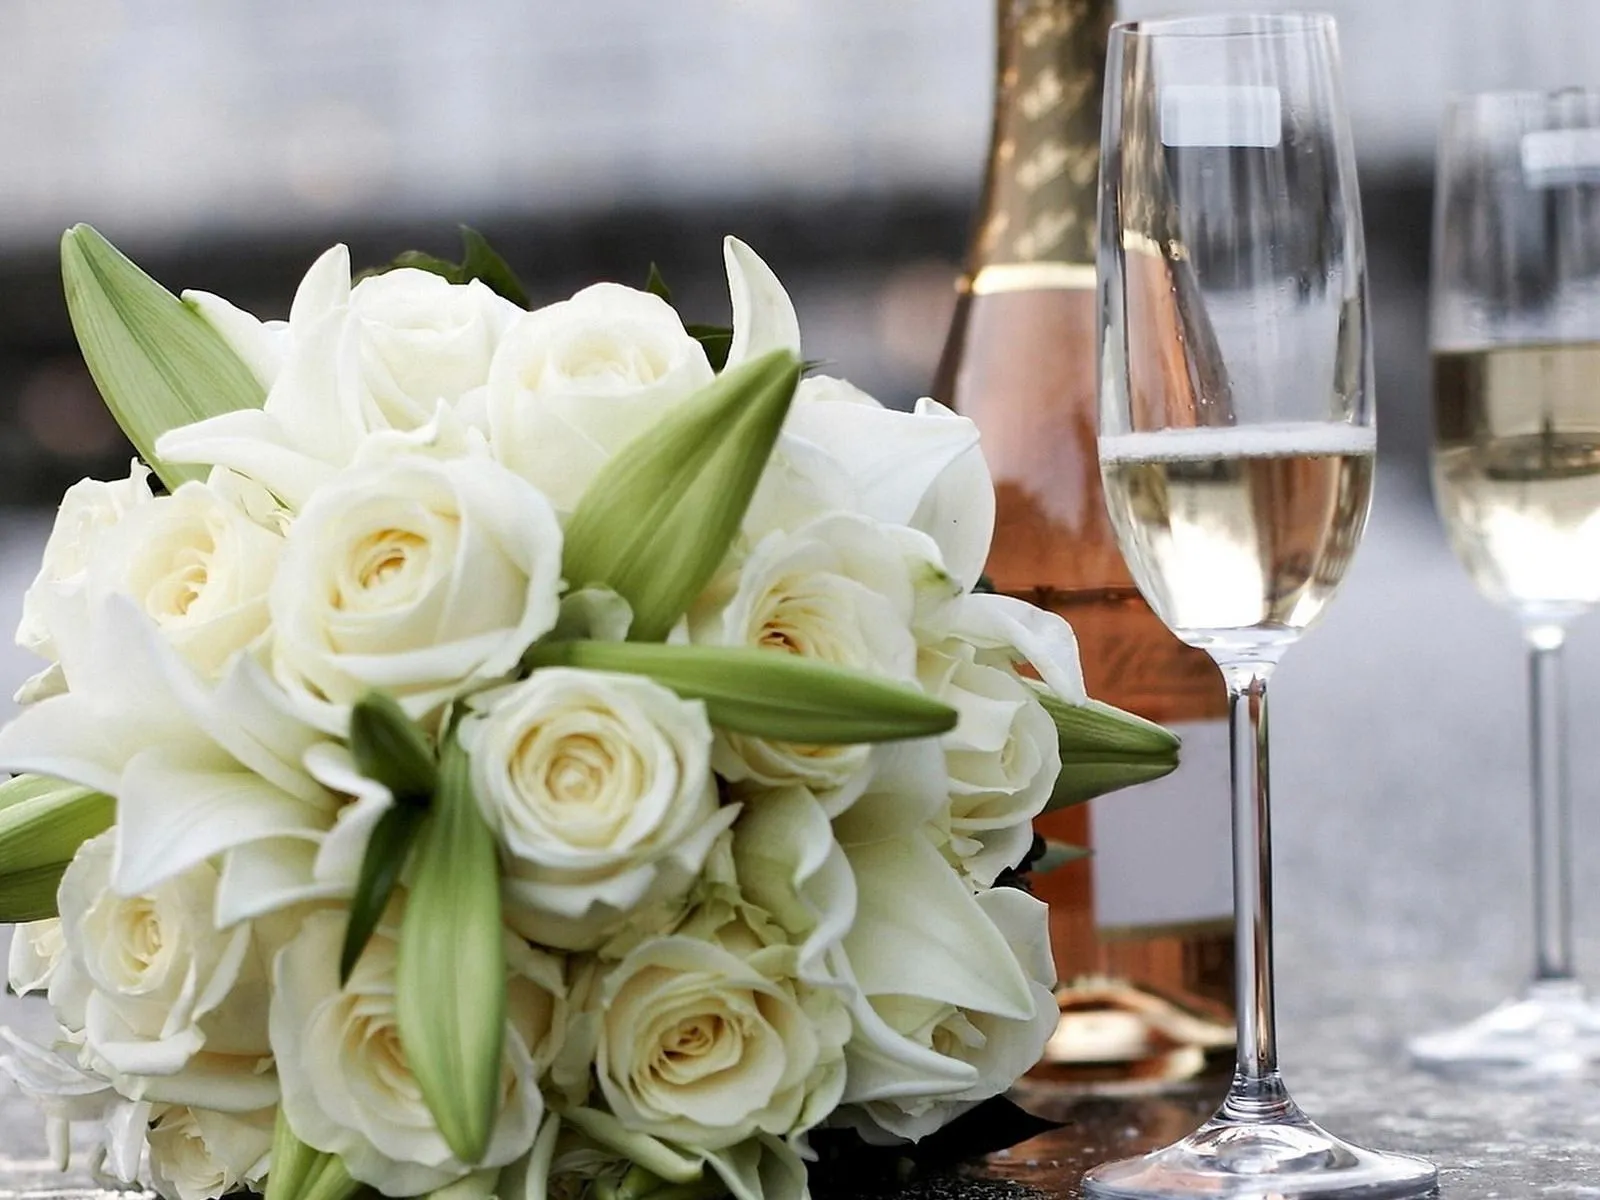 Fondo de Pantalla Flores y champan boda | Imagenes.Horabuena.com